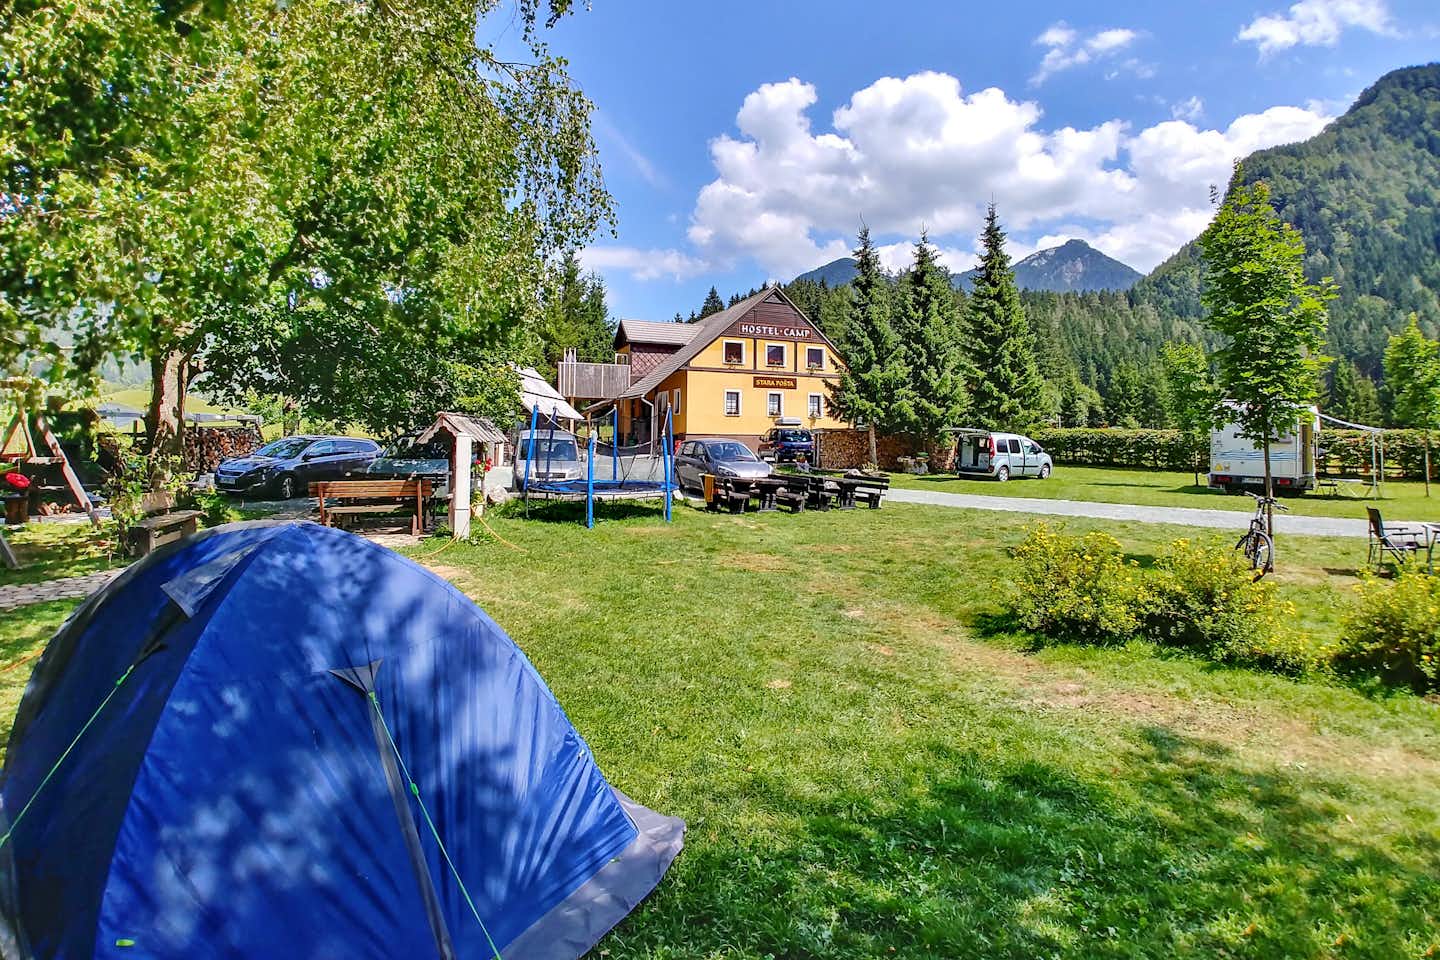 Camp Stara Pošta -  Campingbereich für Zelte und Wohnwagen im Schatten der Bäume mit Blick auf die Berge